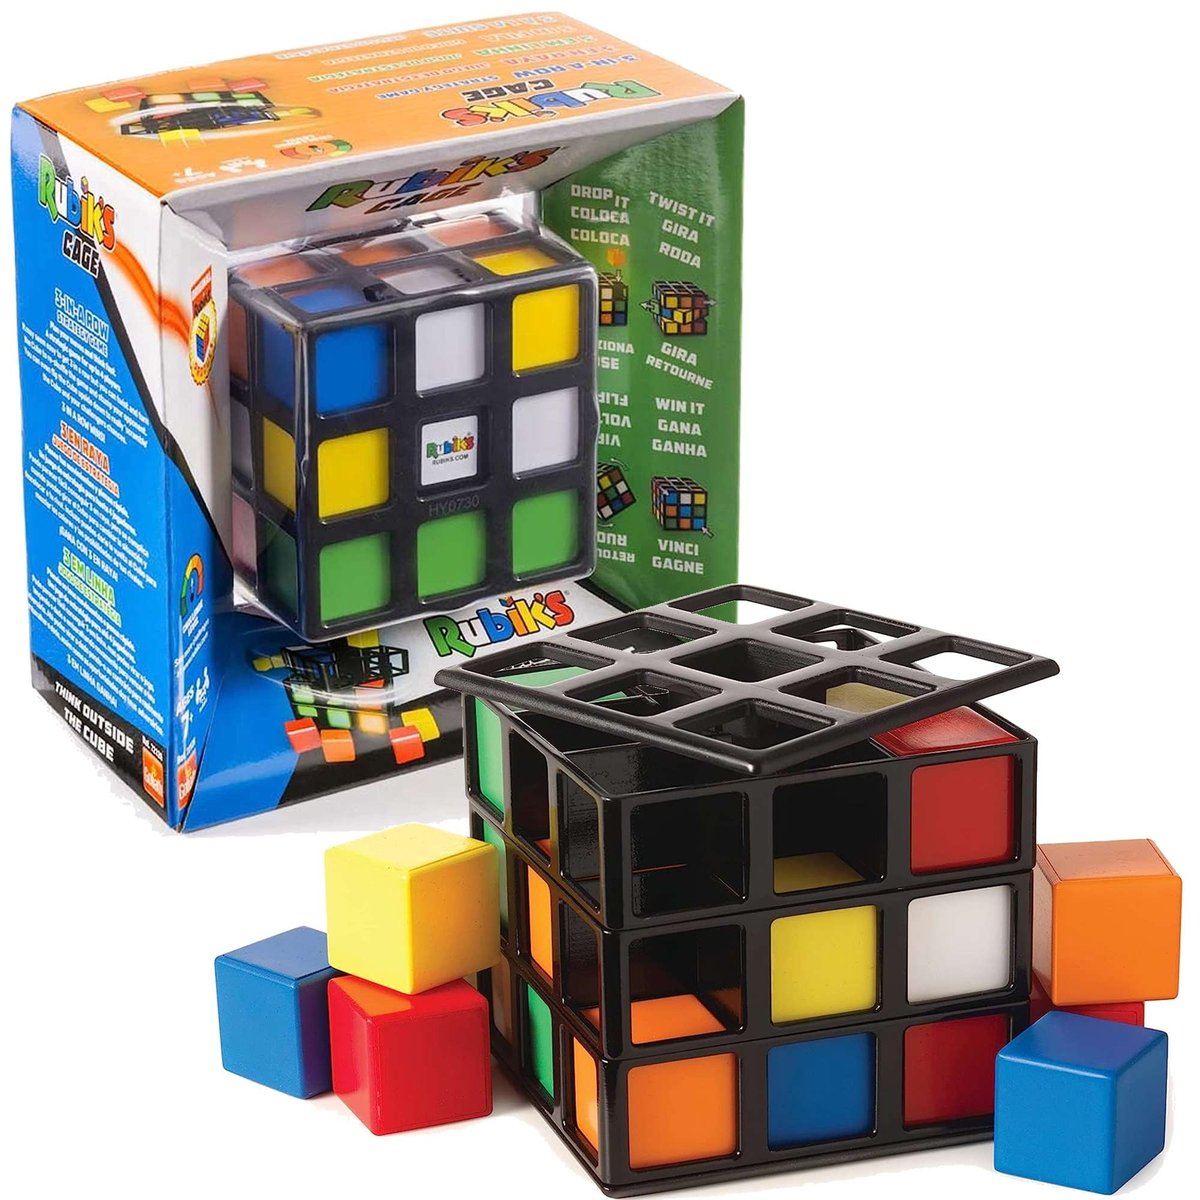 Zdjęcia - Gra planszowa Spin Master Rubik's Cage Kostka Klatka Rubika, gra strategiczna, 